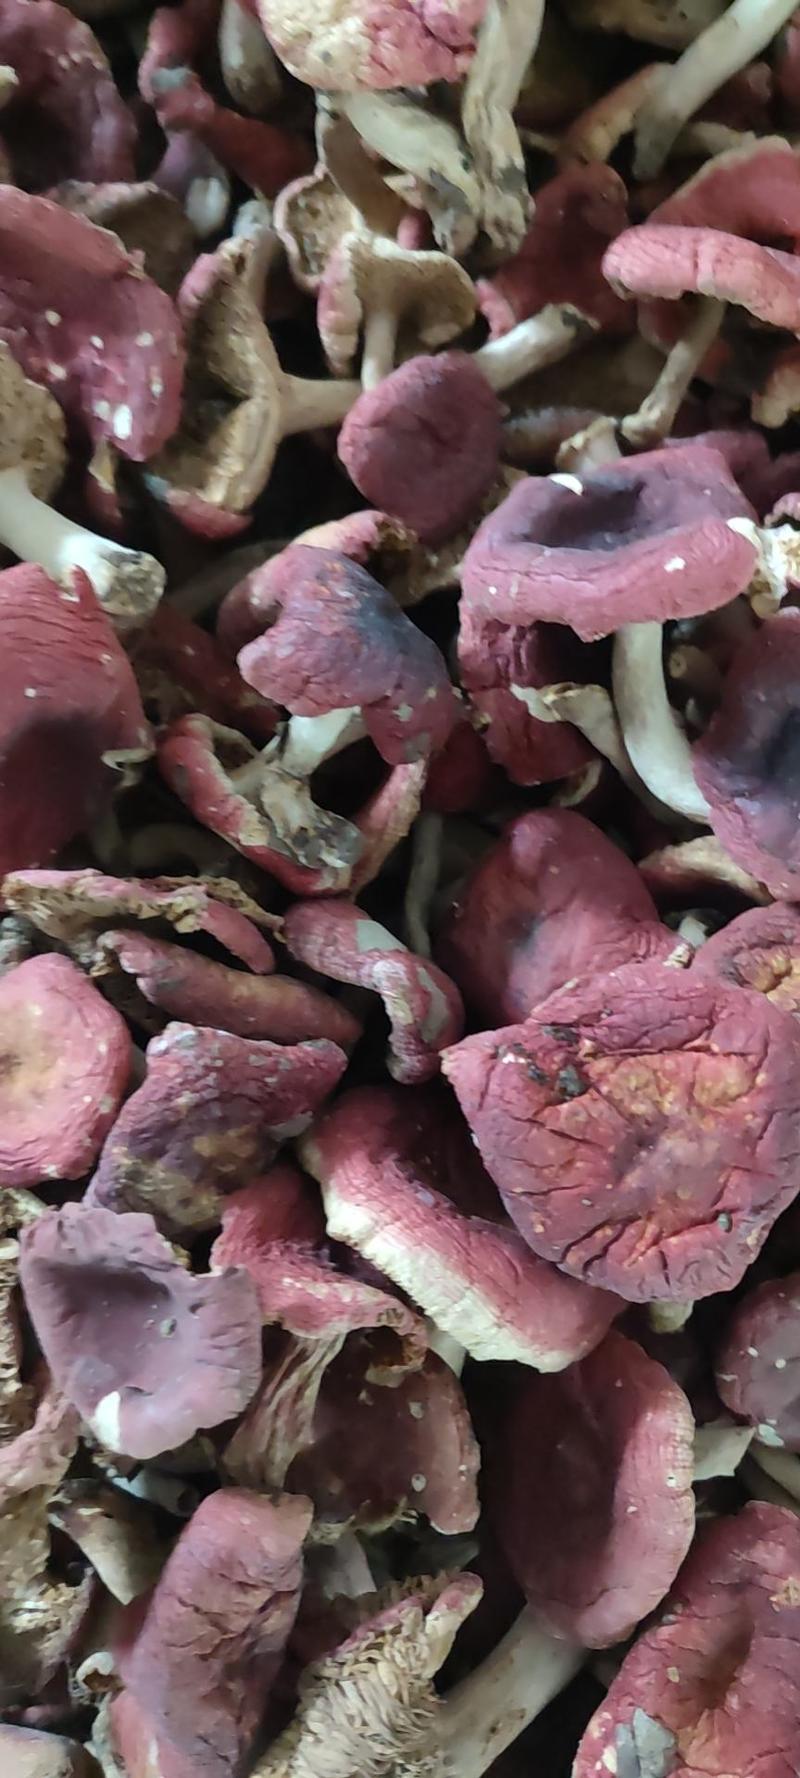 野生菌红香菇，《纯野生》伏牛山采一手货源。色红，